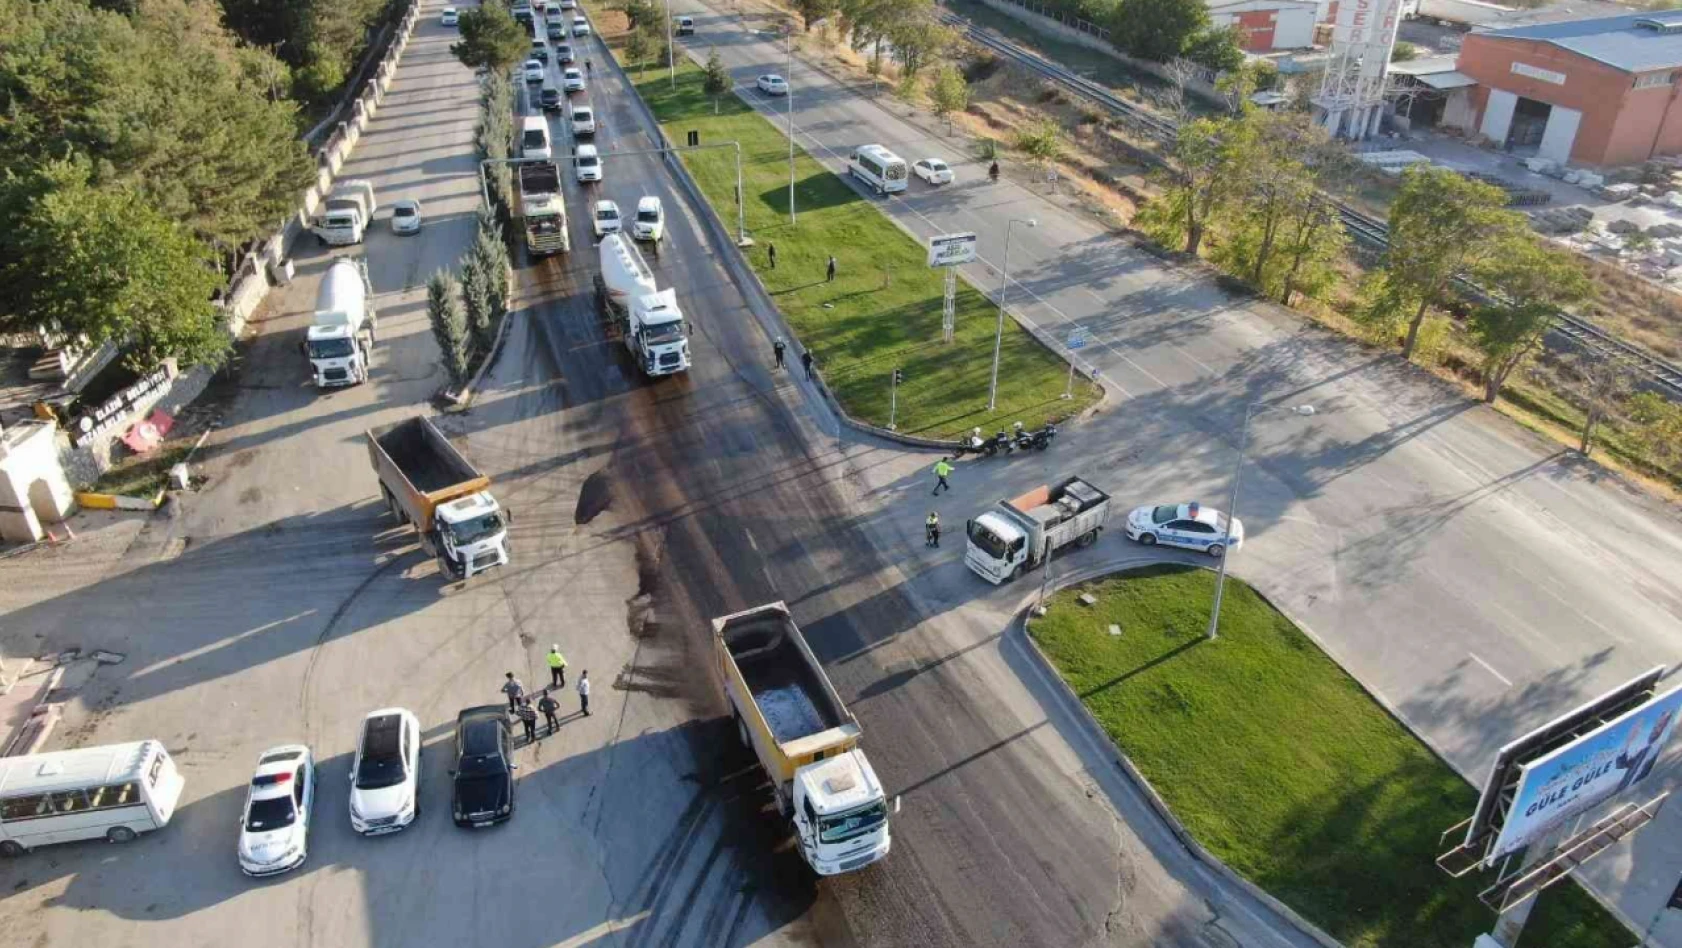 Elazığ'da dron destekli şok trafik denetimleri devam ediyor